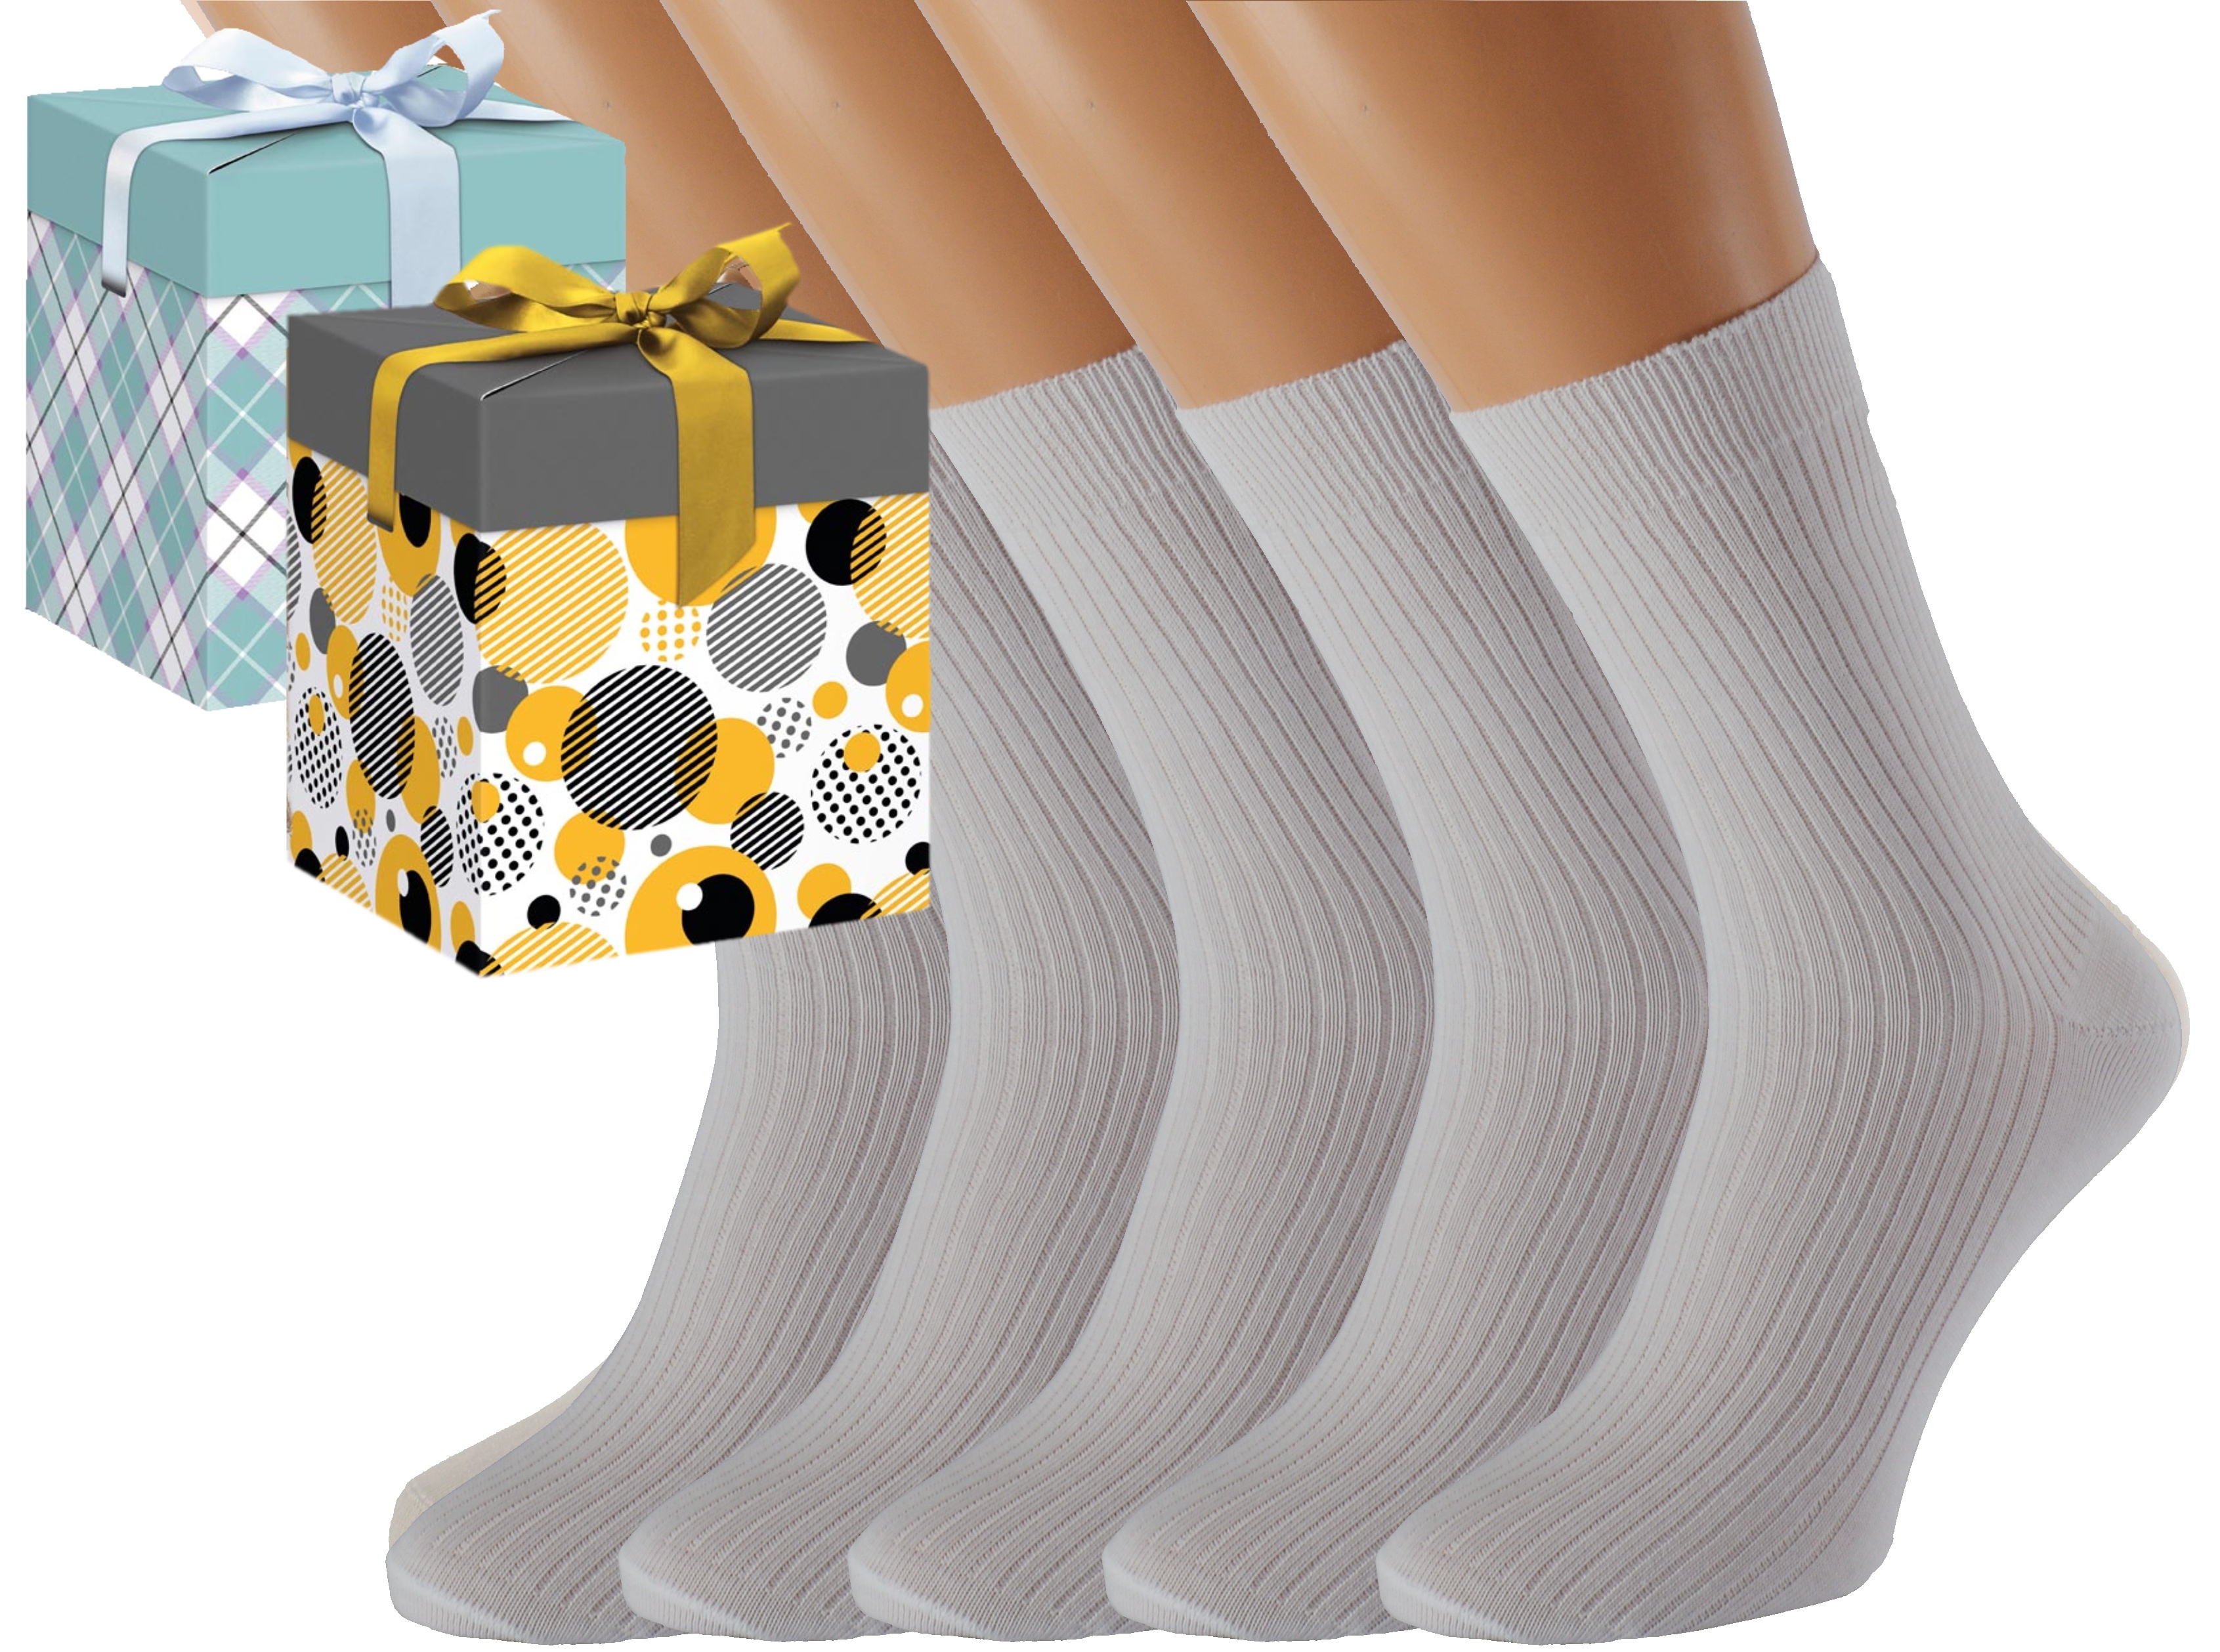 Dárkové balení 5 párů zdravotních ponožek LUKÁŠ Barva: Bílé, Velikost: EUR 39-41 (UK 6-7), Zvolte variantu dárkového balení: Mint kostkovaná